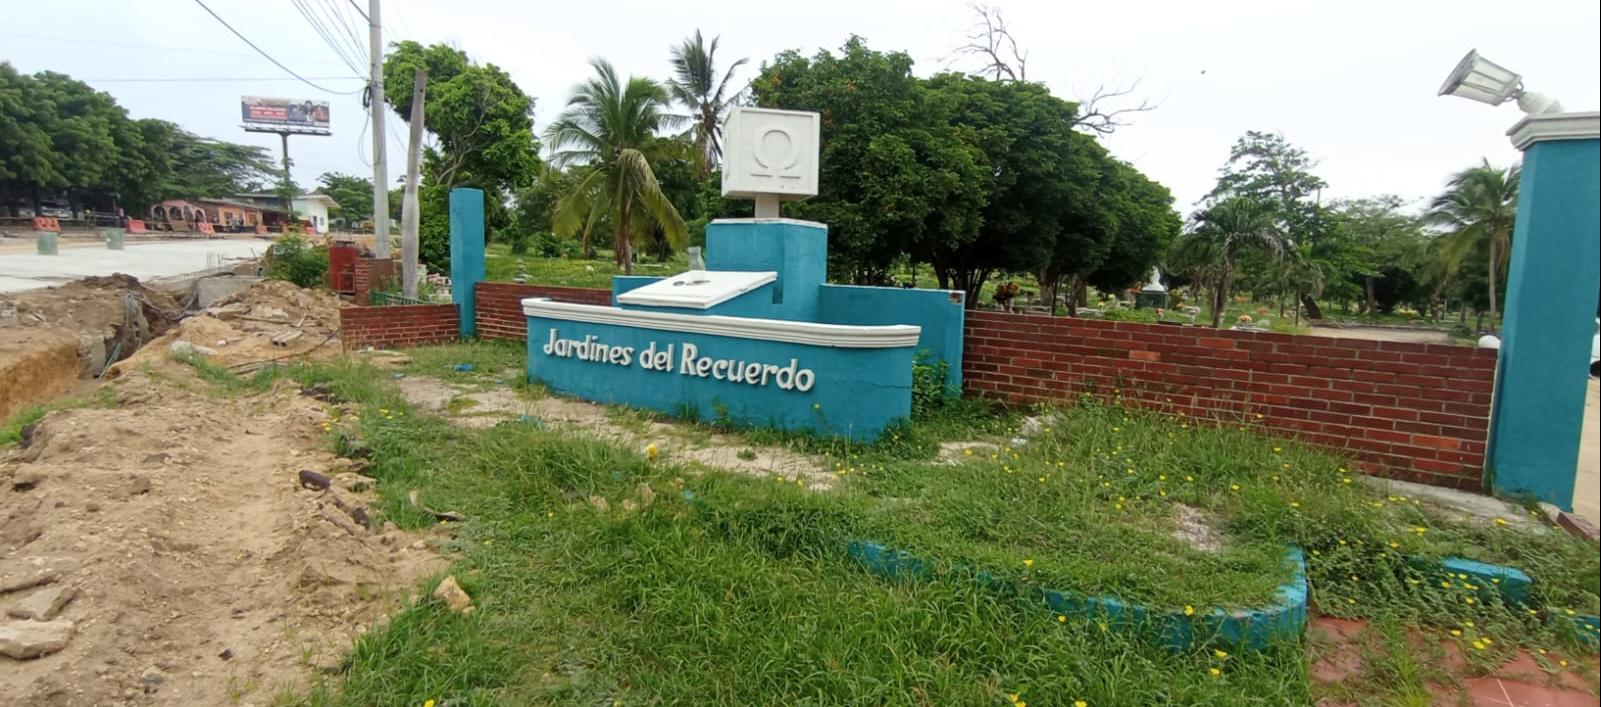 Cementerio Jardines del Recuerdo.